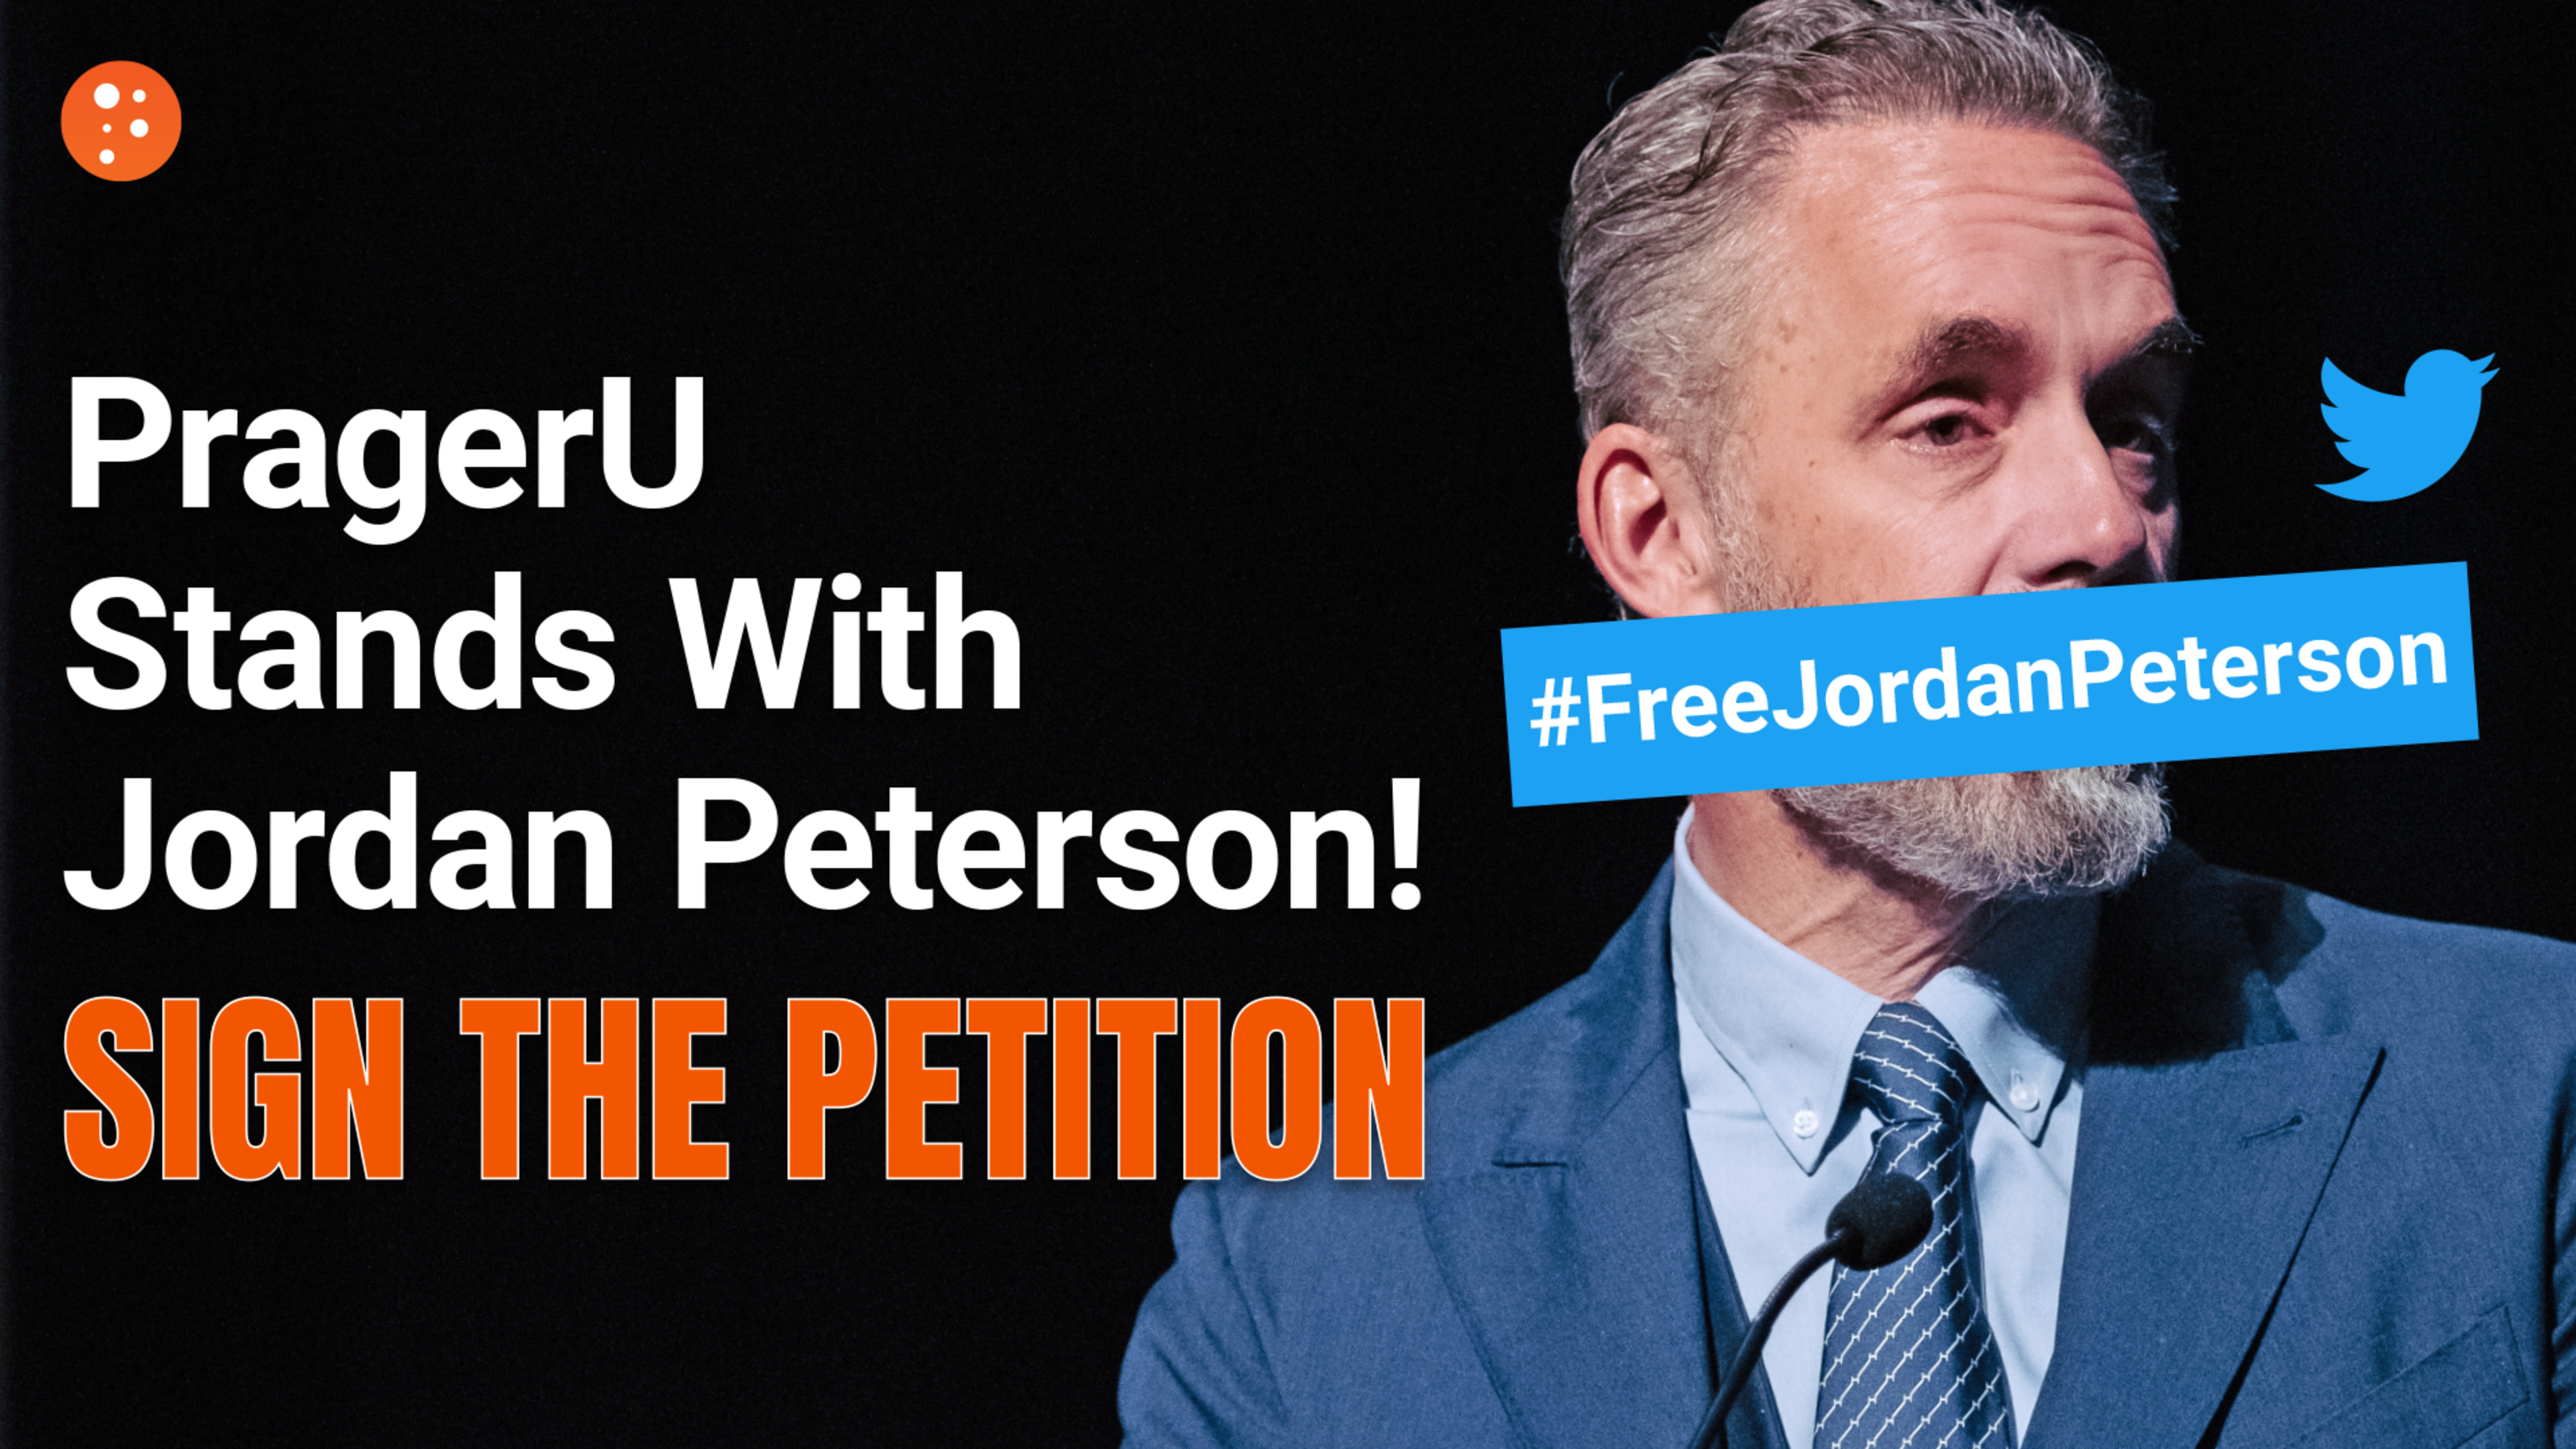 Petition FreeJordanPeterson WEB GRID5